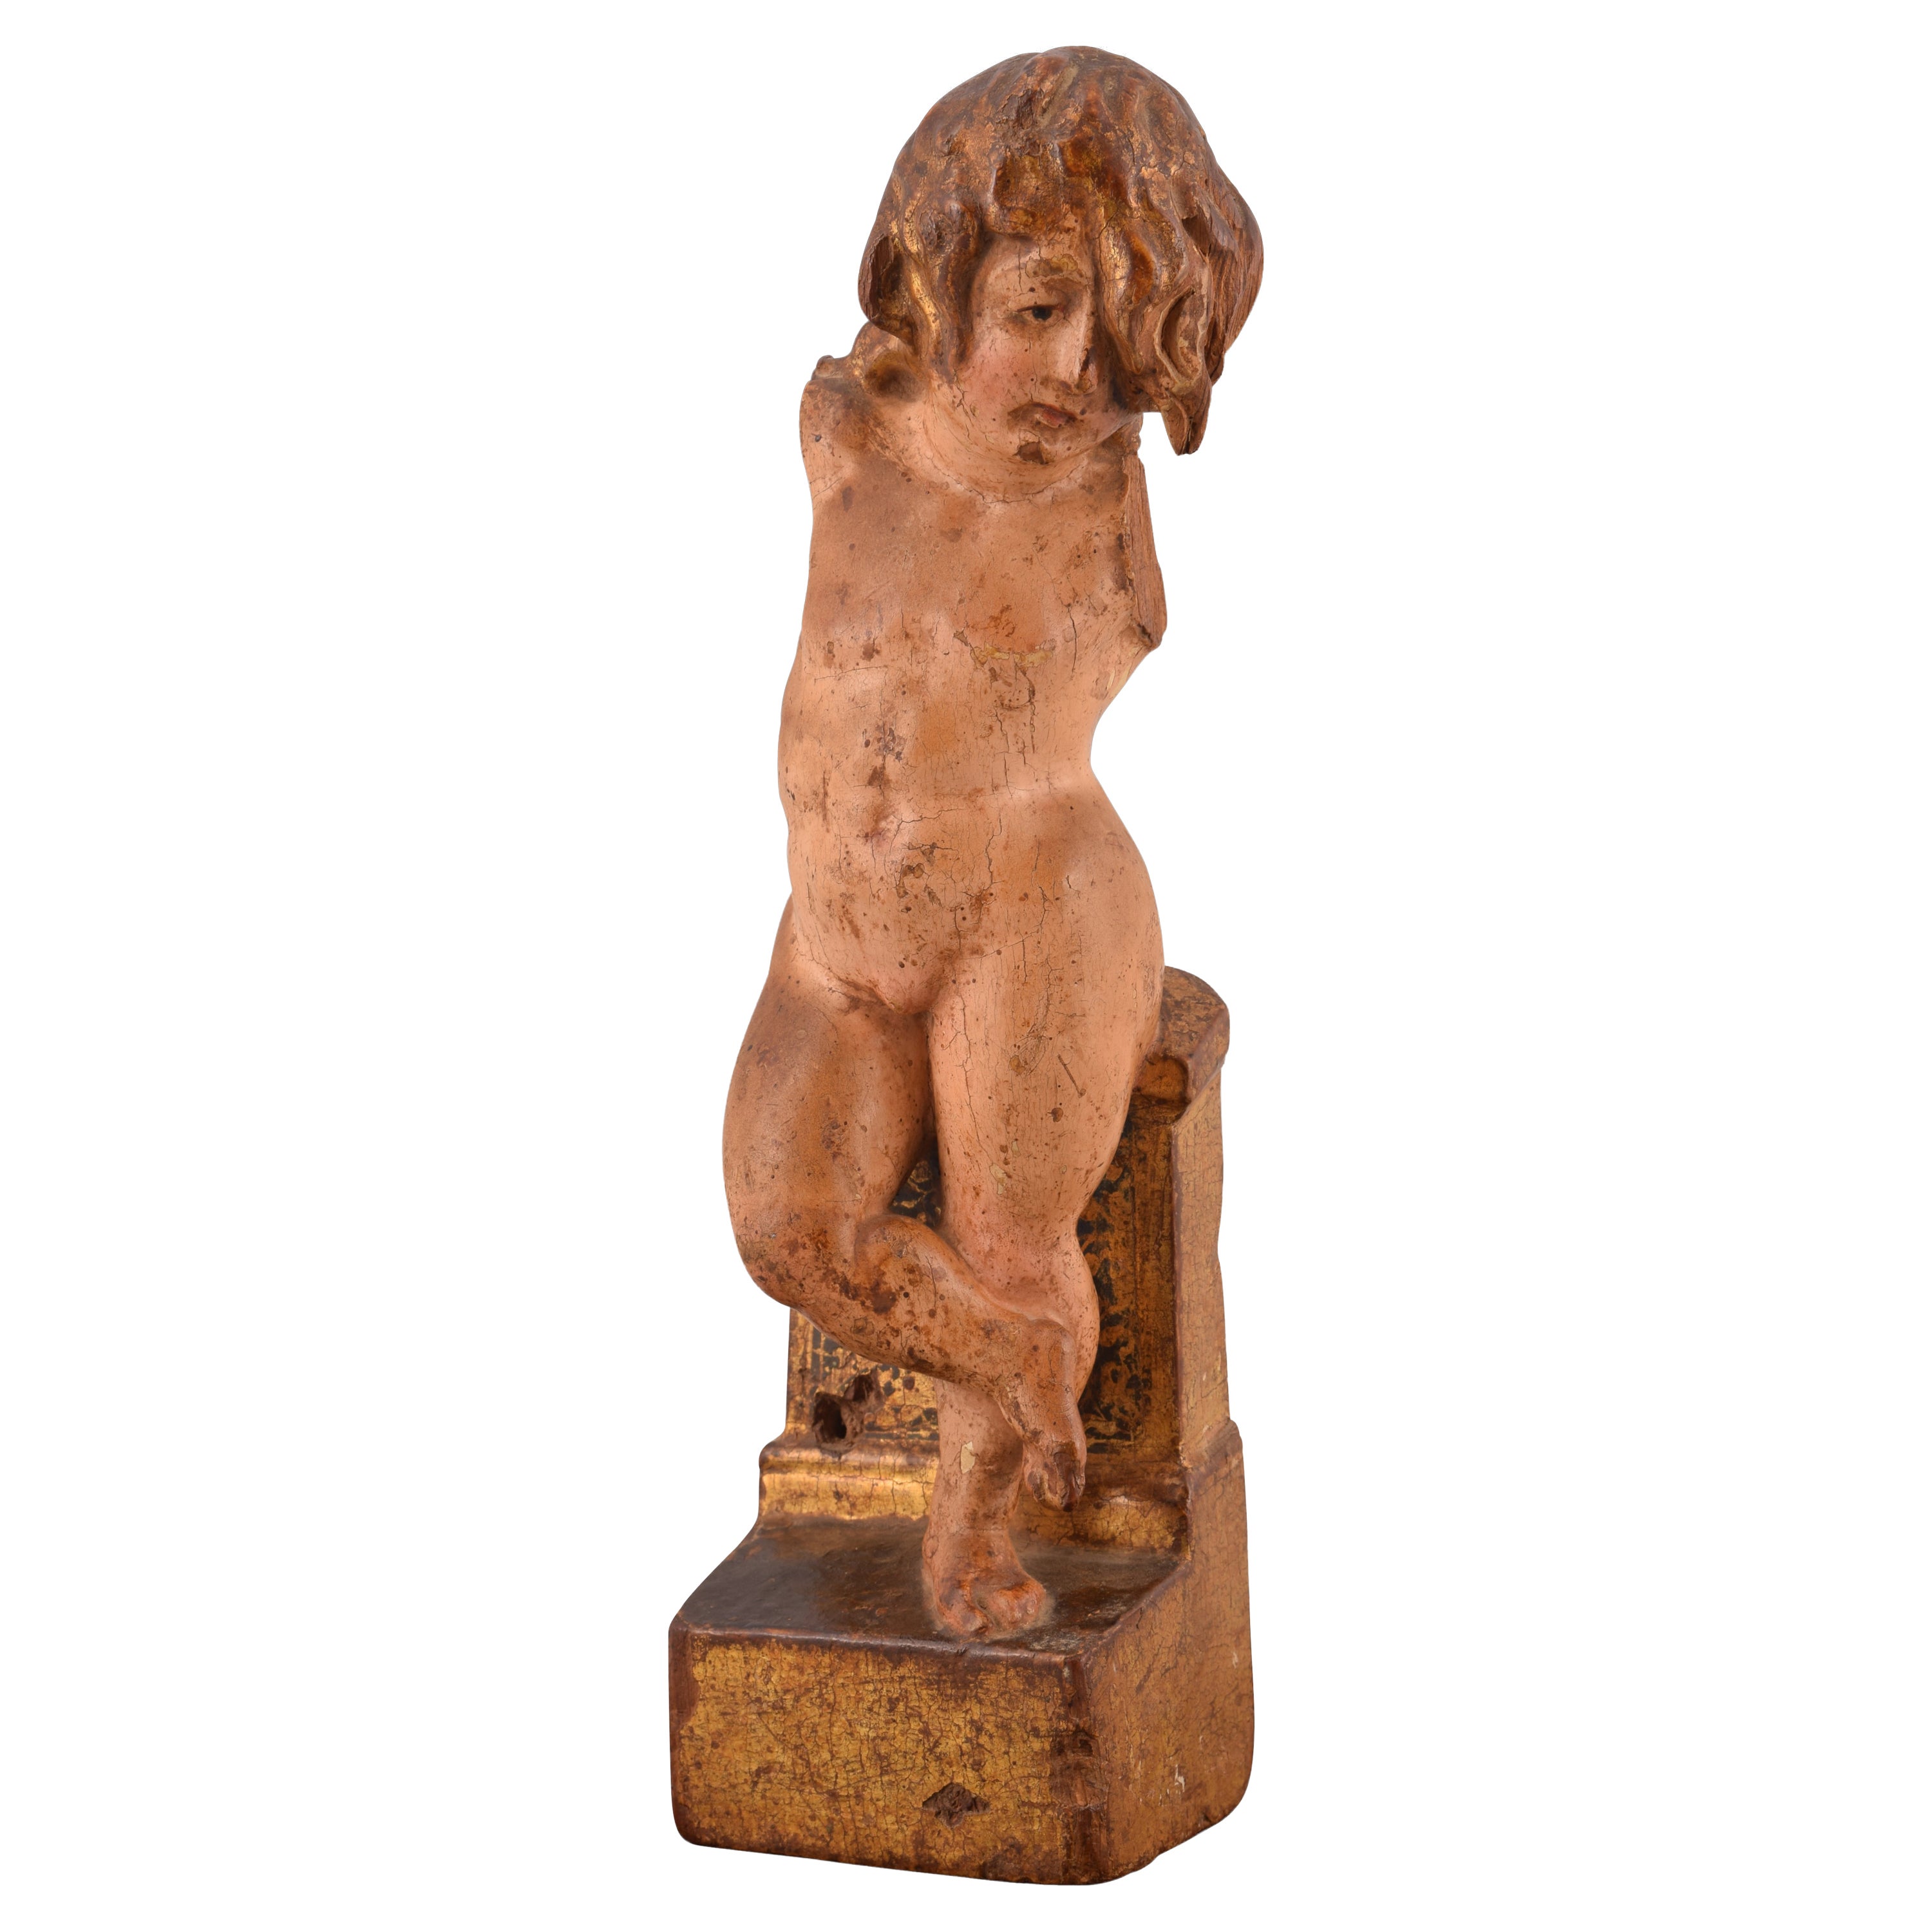 Bébé Jésus ou ange. Bois sculpté, polychrome et doré. École espagnole, 16e siècle